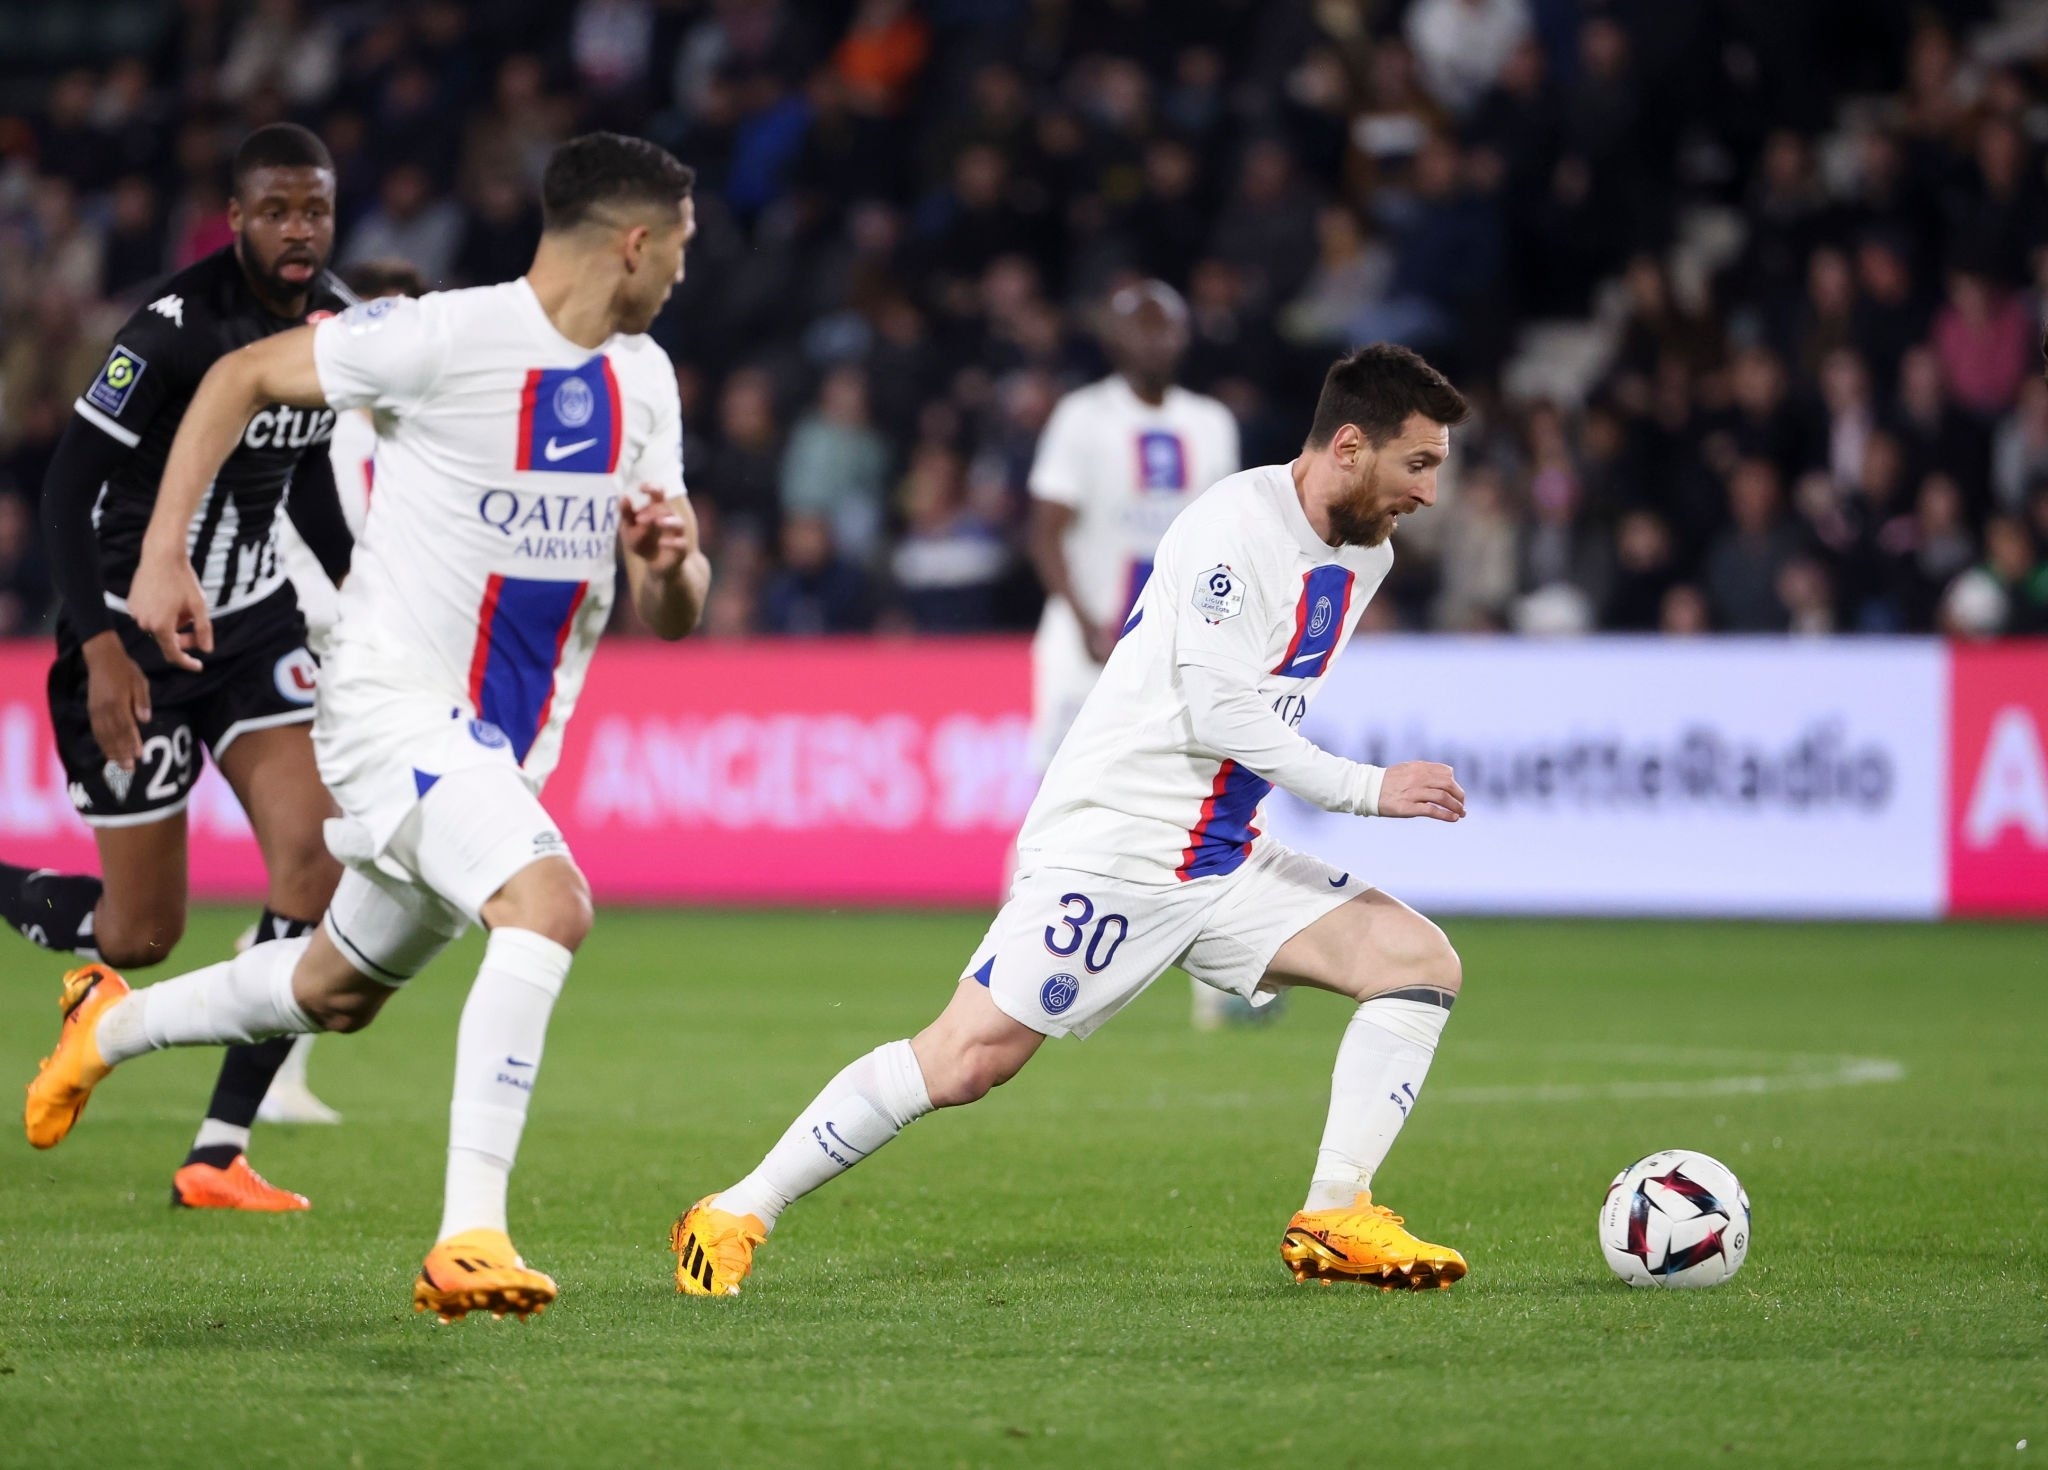 PSG - Ajaccio CANLI Yayını: Sabah 12:30'da Mbappe ve Messi mücadeleci Ajaccio ile karşı karşıya gelirken başlayacak, Ligue 1 CANLI Güncellemelerini takip edin